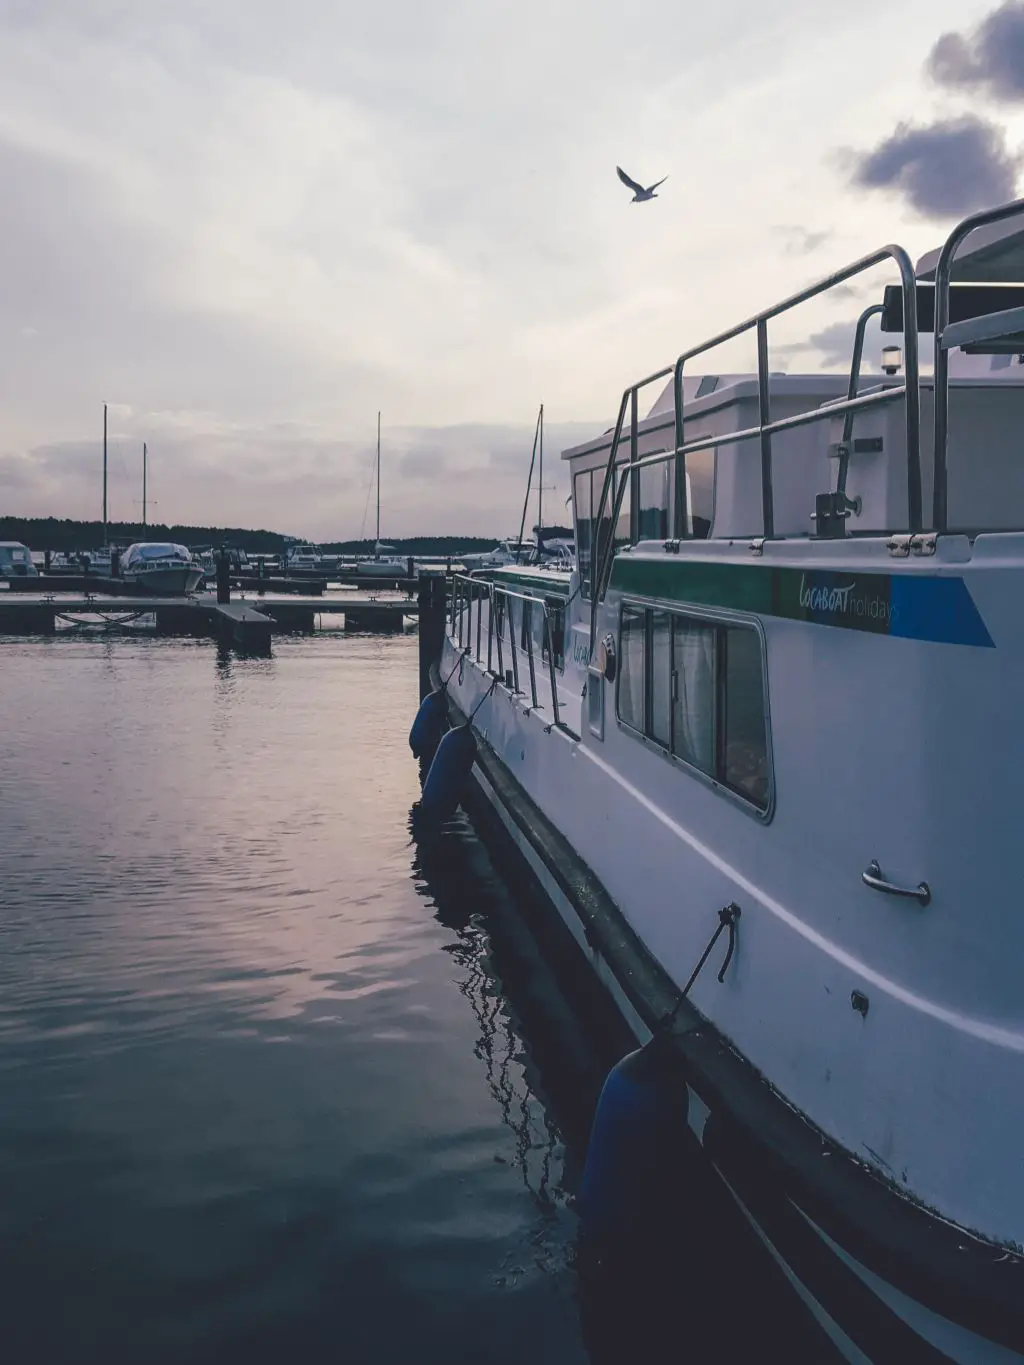 Hausboot mieten für den Urlaub auf der Mecklenburgischen Seenplatte - Meine Tipps und Erfahrungen mit Locaboat